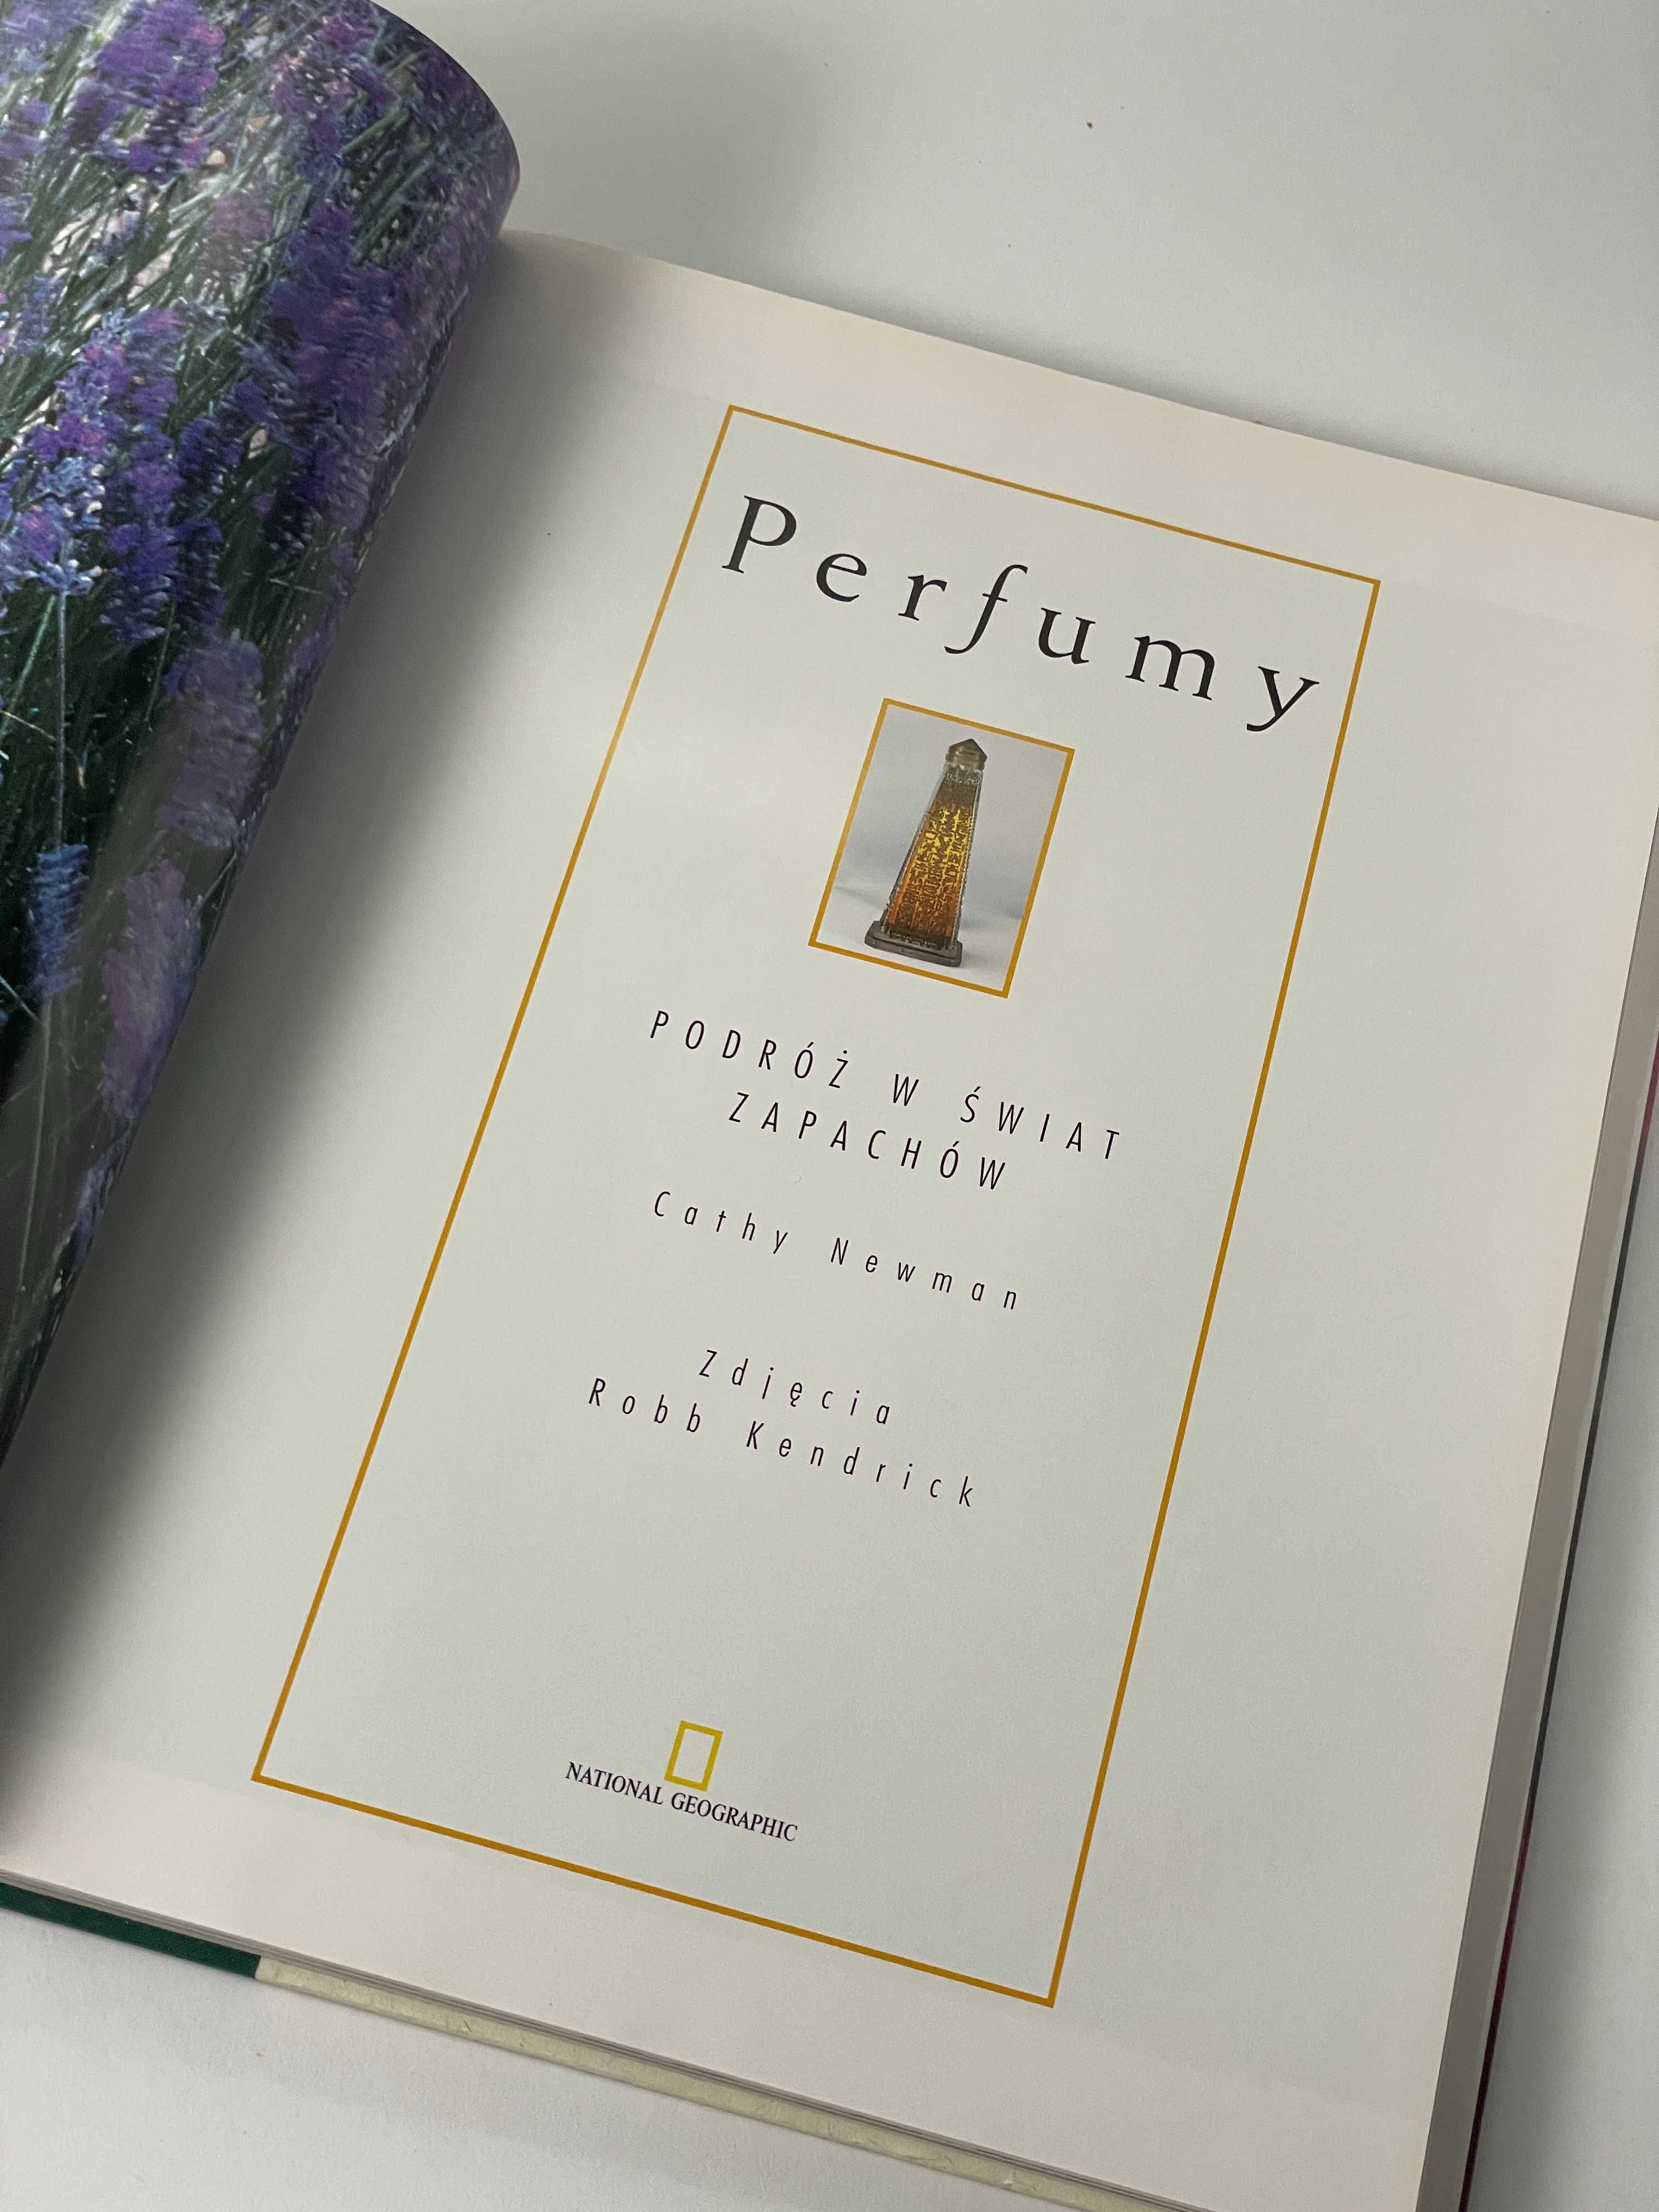 Perfumy. Podróż w świat zapachów - Cathy Newman